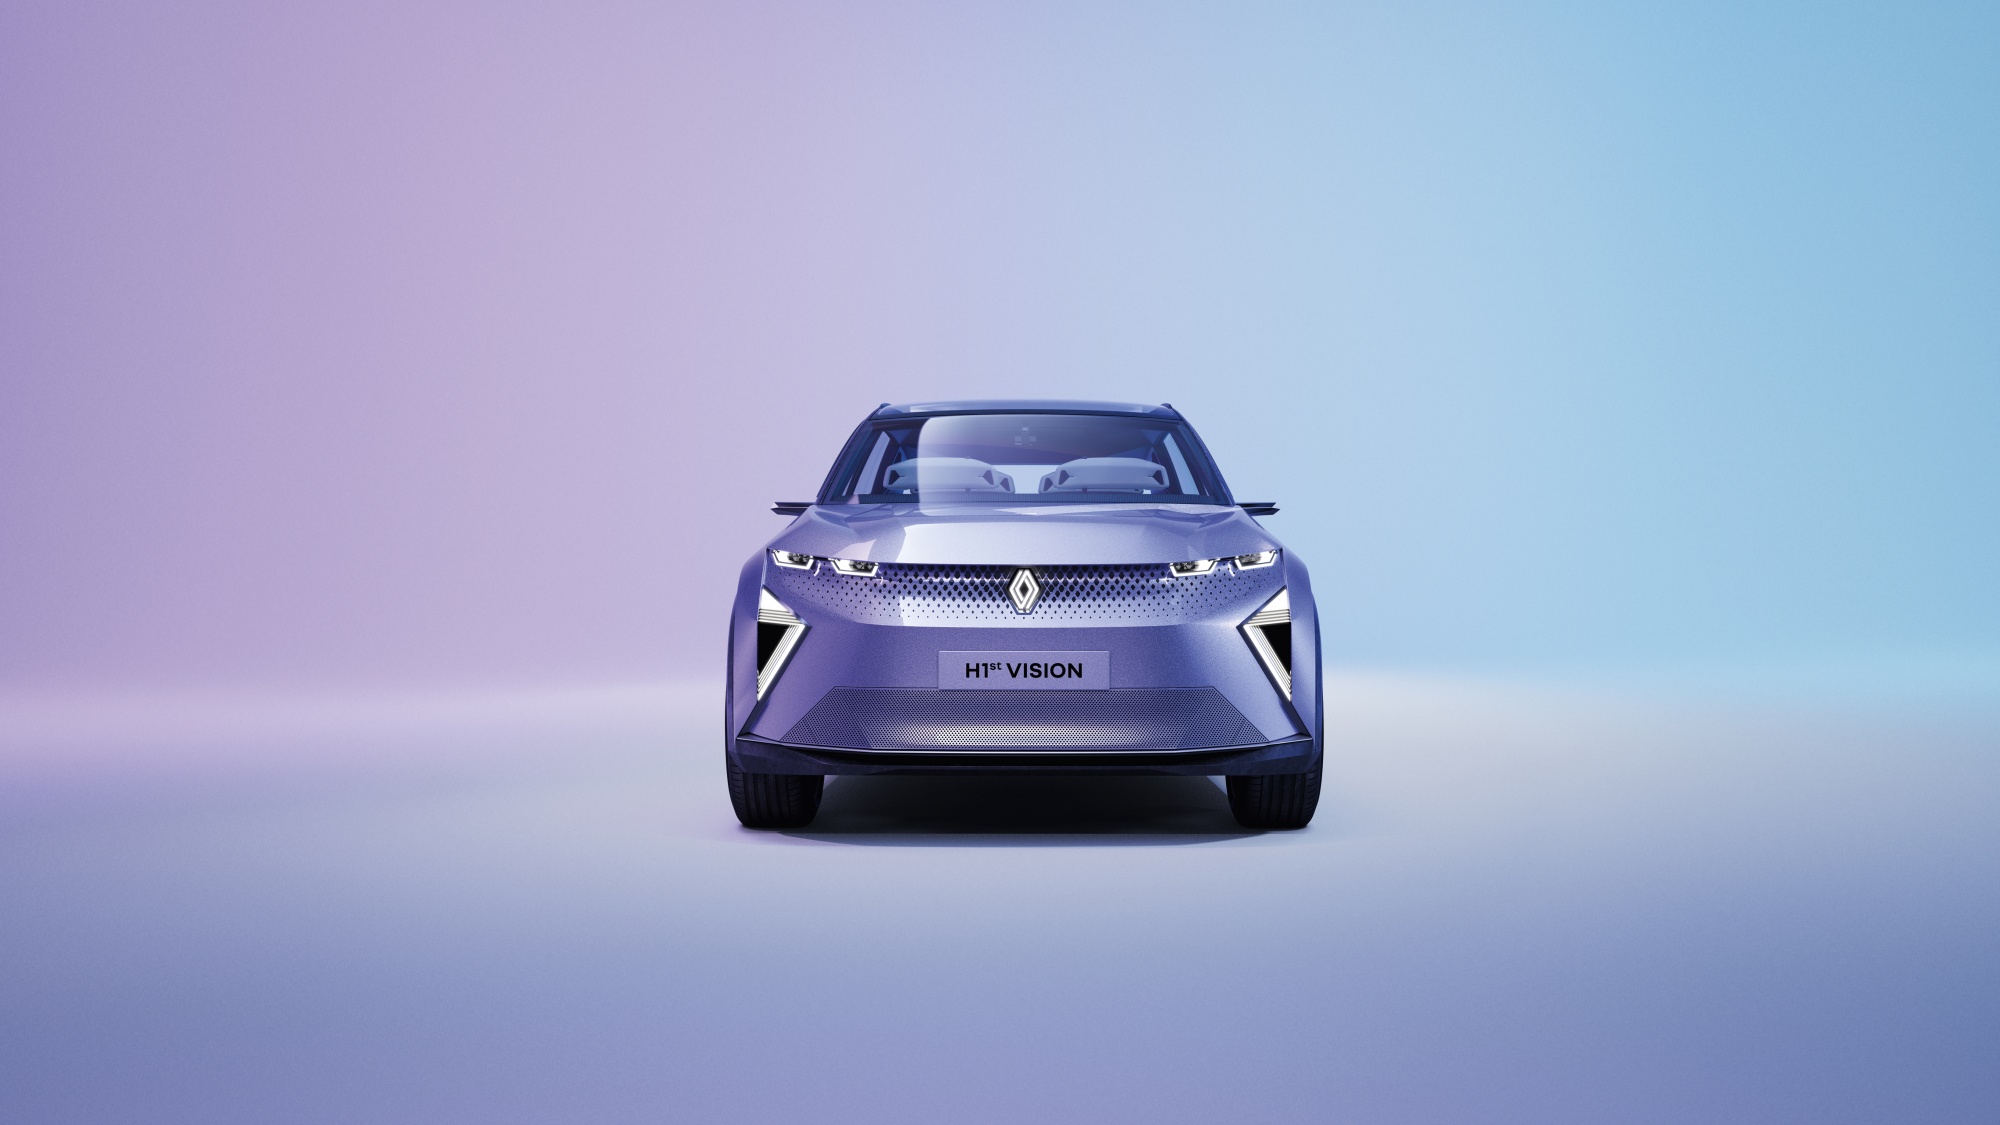 Renault показала концепт-кар H1st Vision з біометричною ідентифікацією водія та функціями кібербезпеки